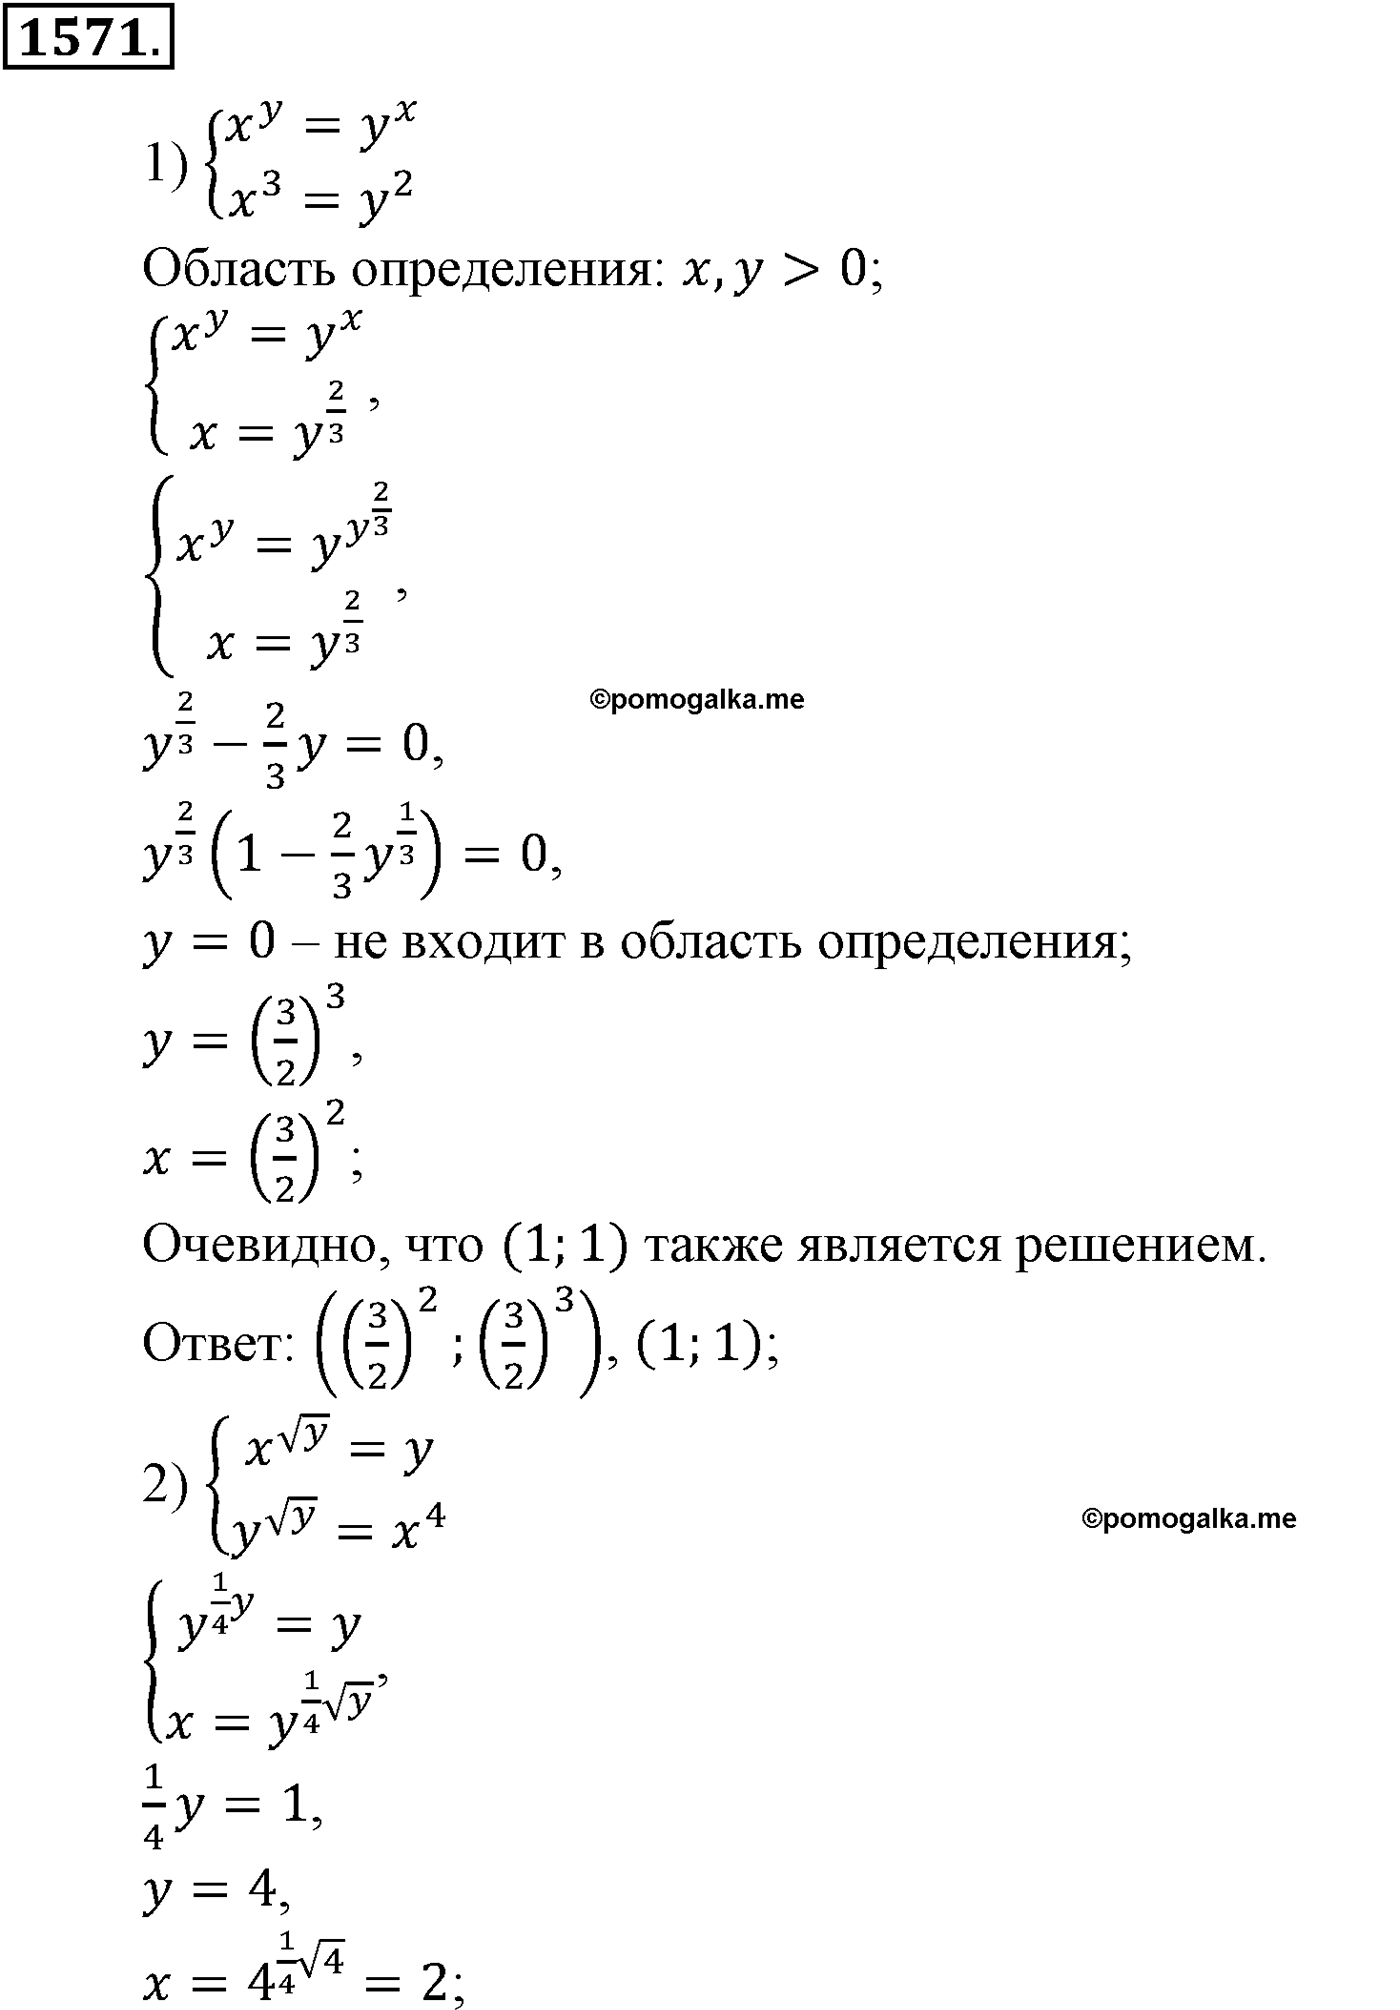 разбор задачи №1571 по алгебре за 10-11 класс из учебника Алимова, Колягина